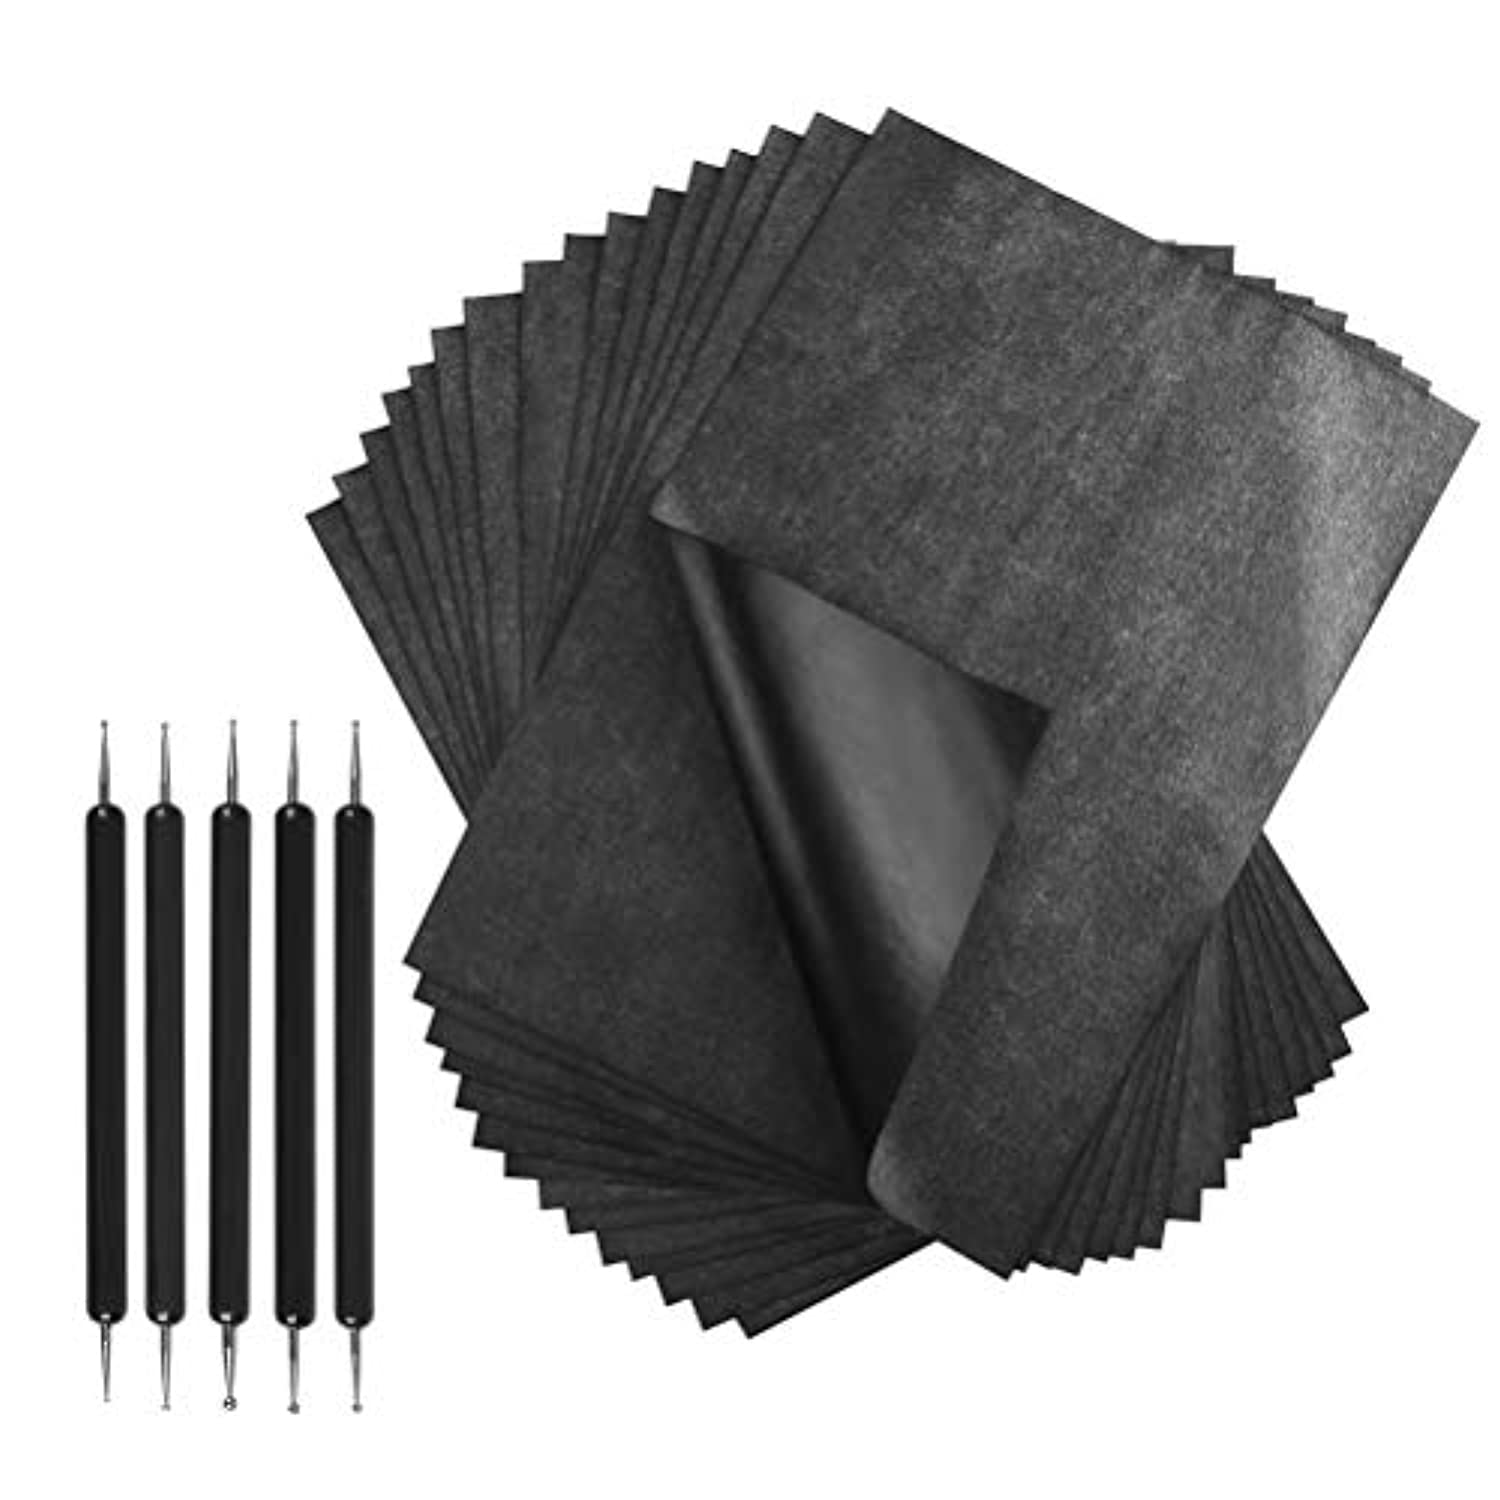 30 hojas de papel de transferencia de carbono, papel de calco, papel de  copia de grafito de carbono con 5 piezas de lápiz capacitivo para madera